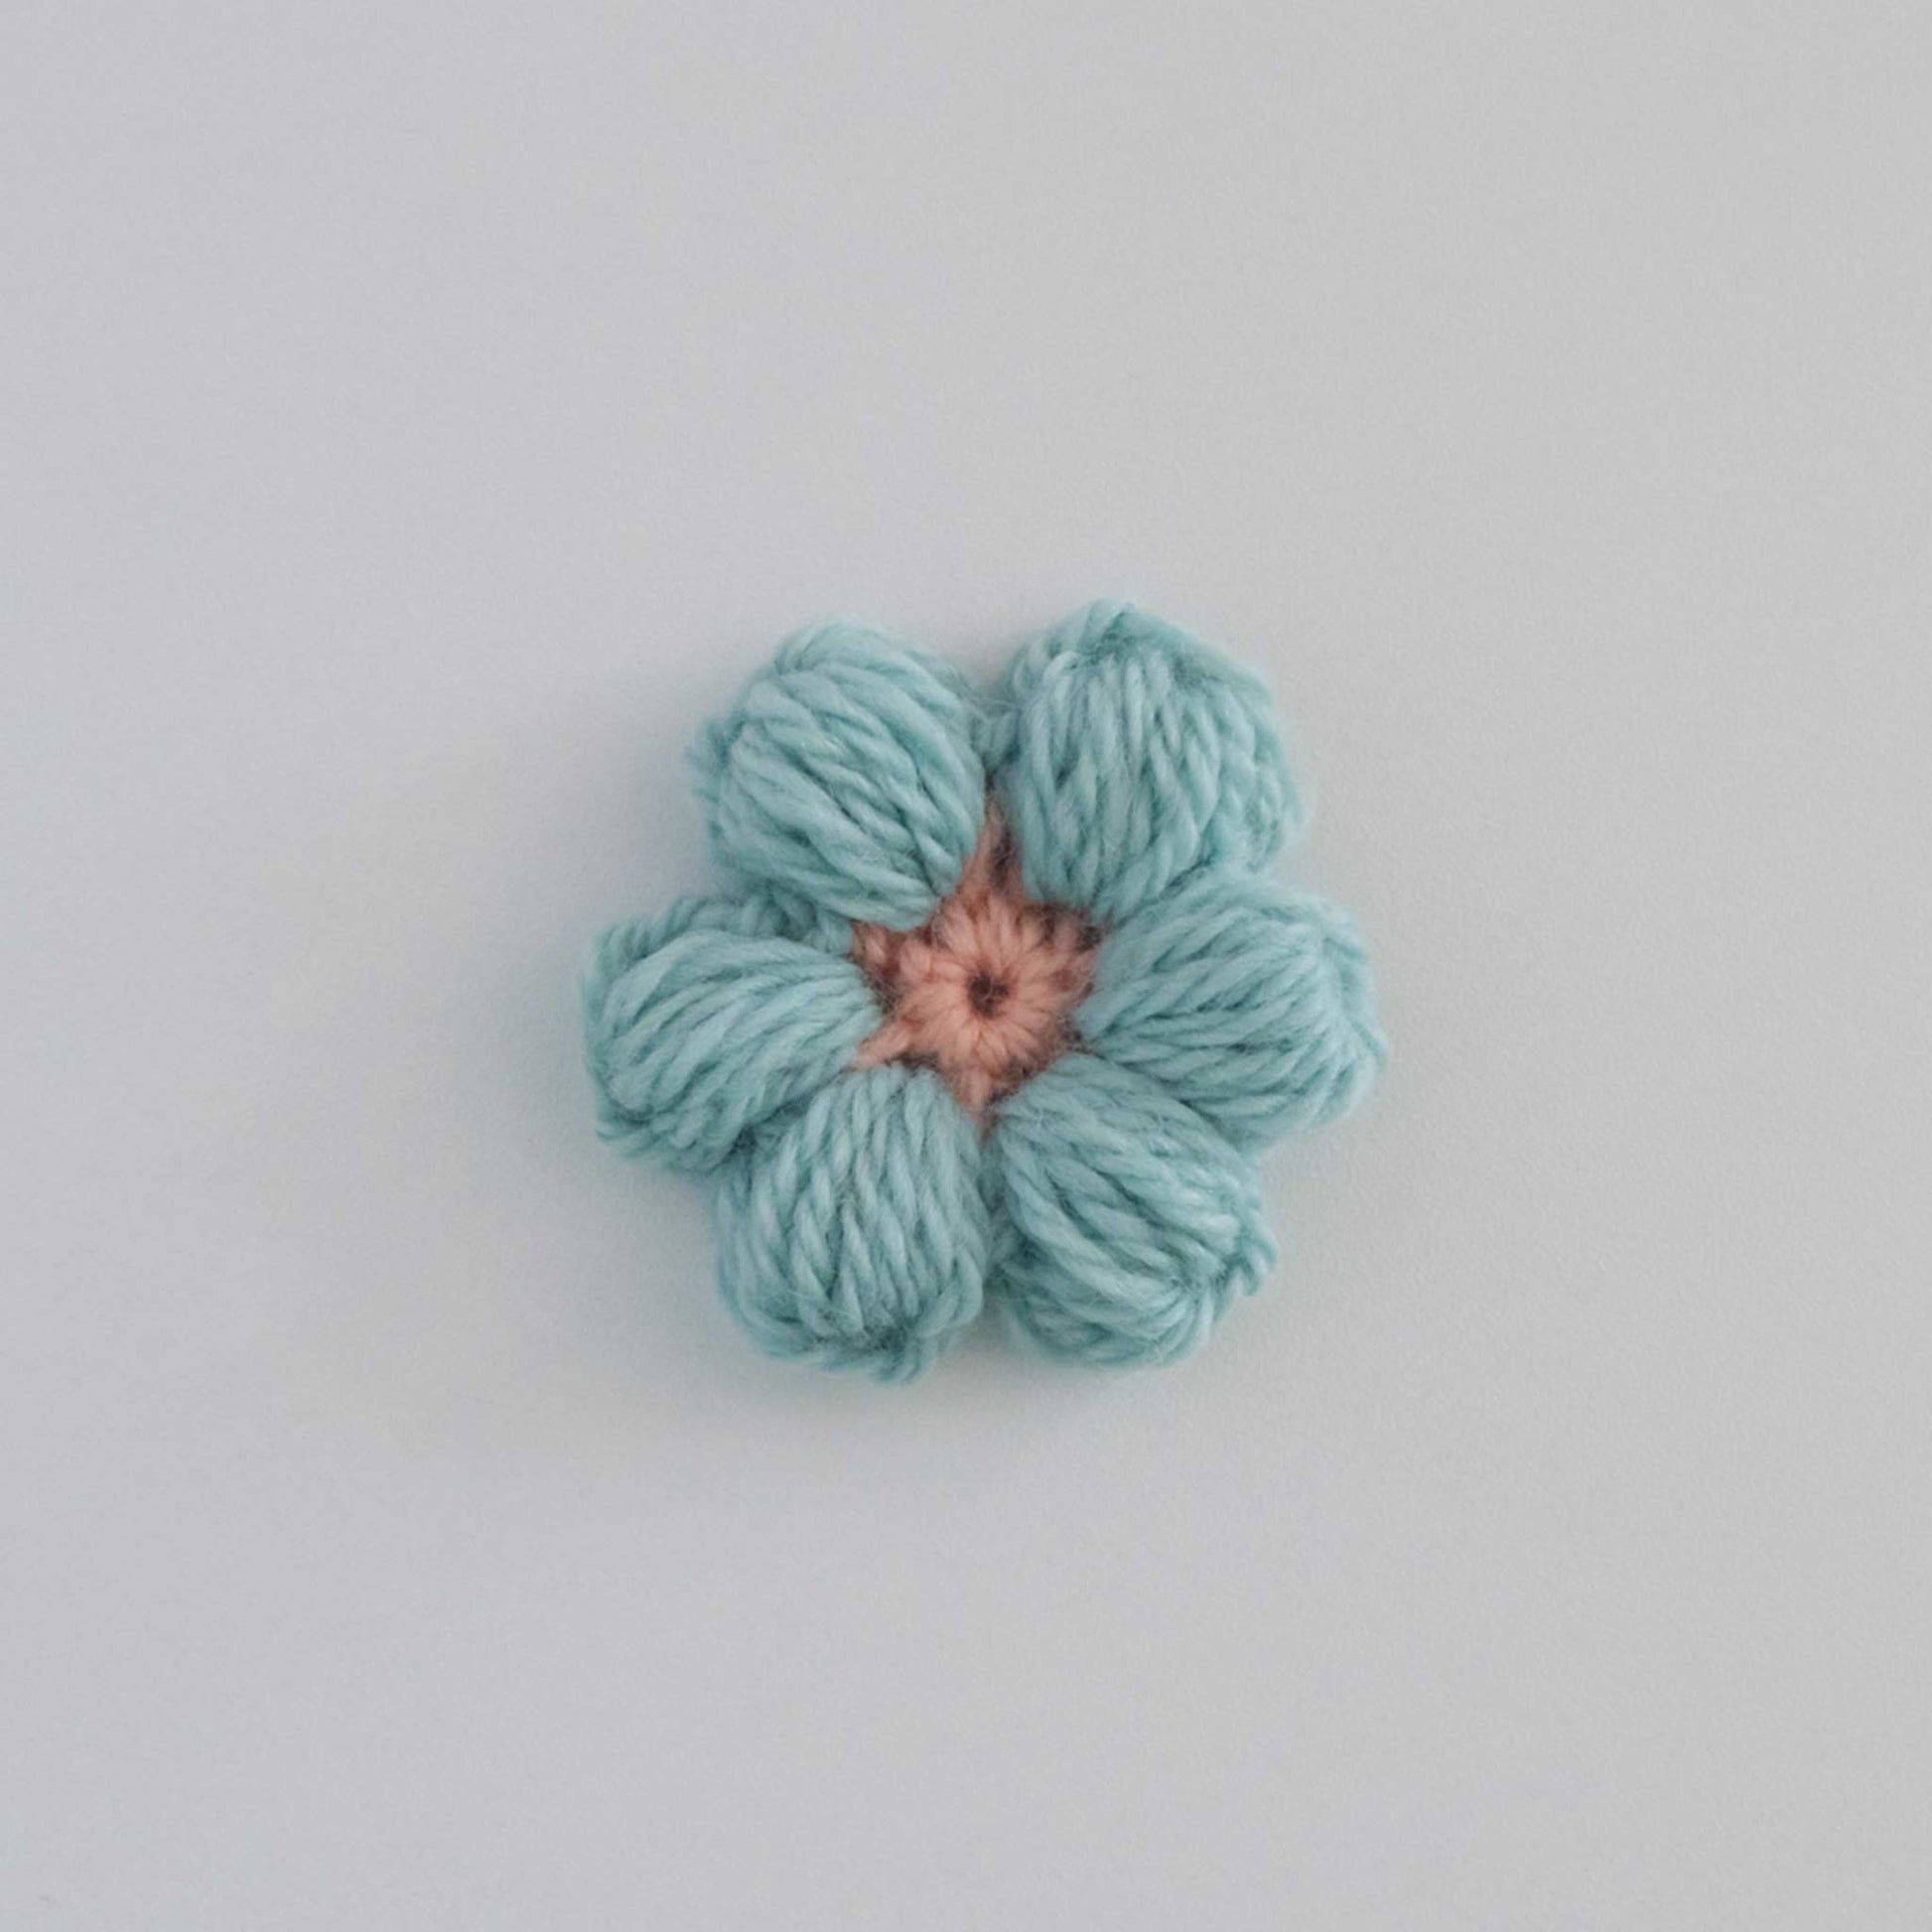 Puff Stitch Crochet Flowers Pdf B Hooked